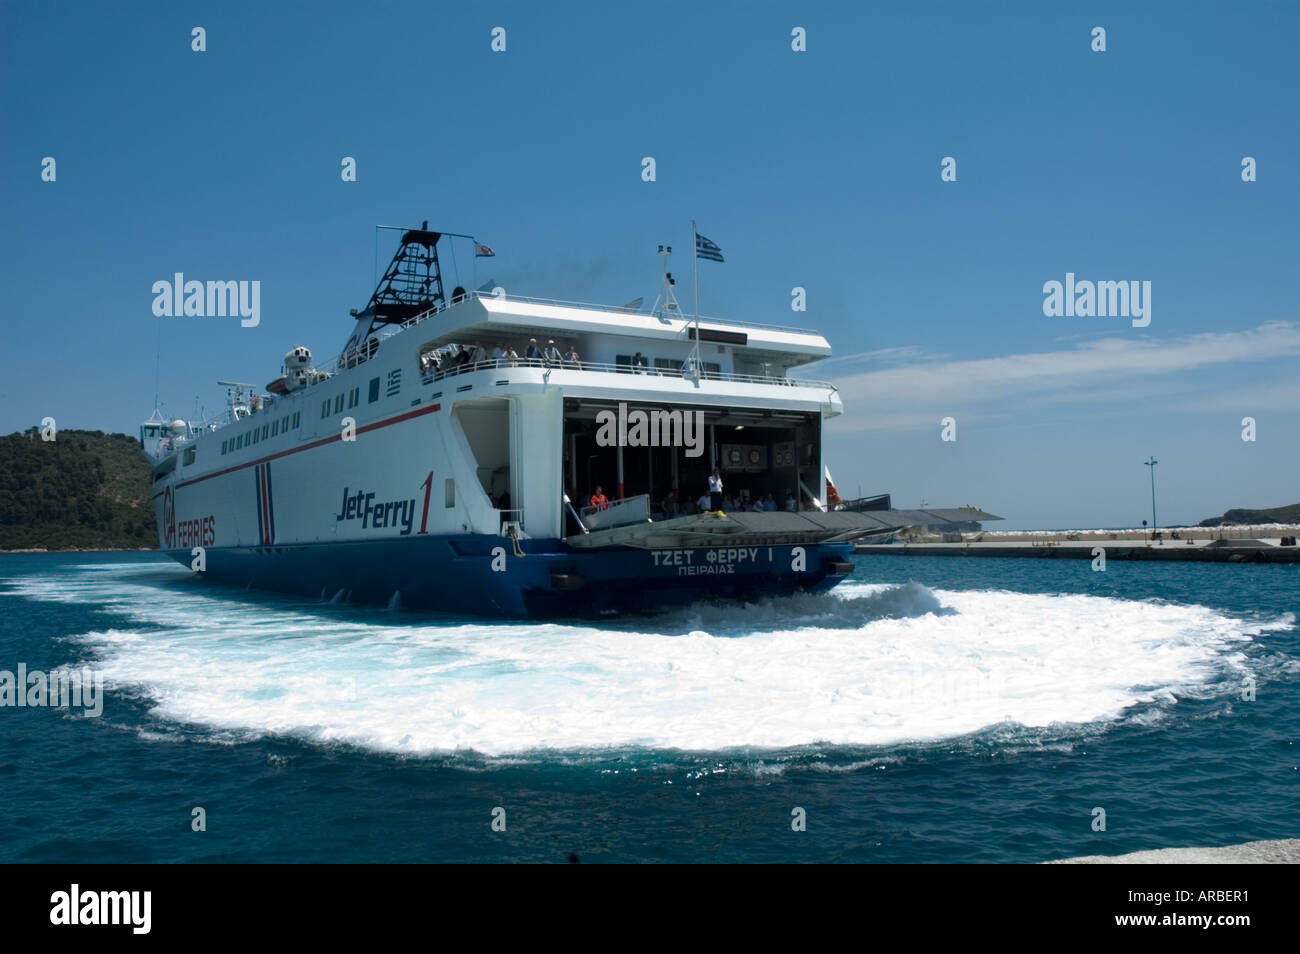 Car ferry, New Port, Skiathos, Greece Stock Photo